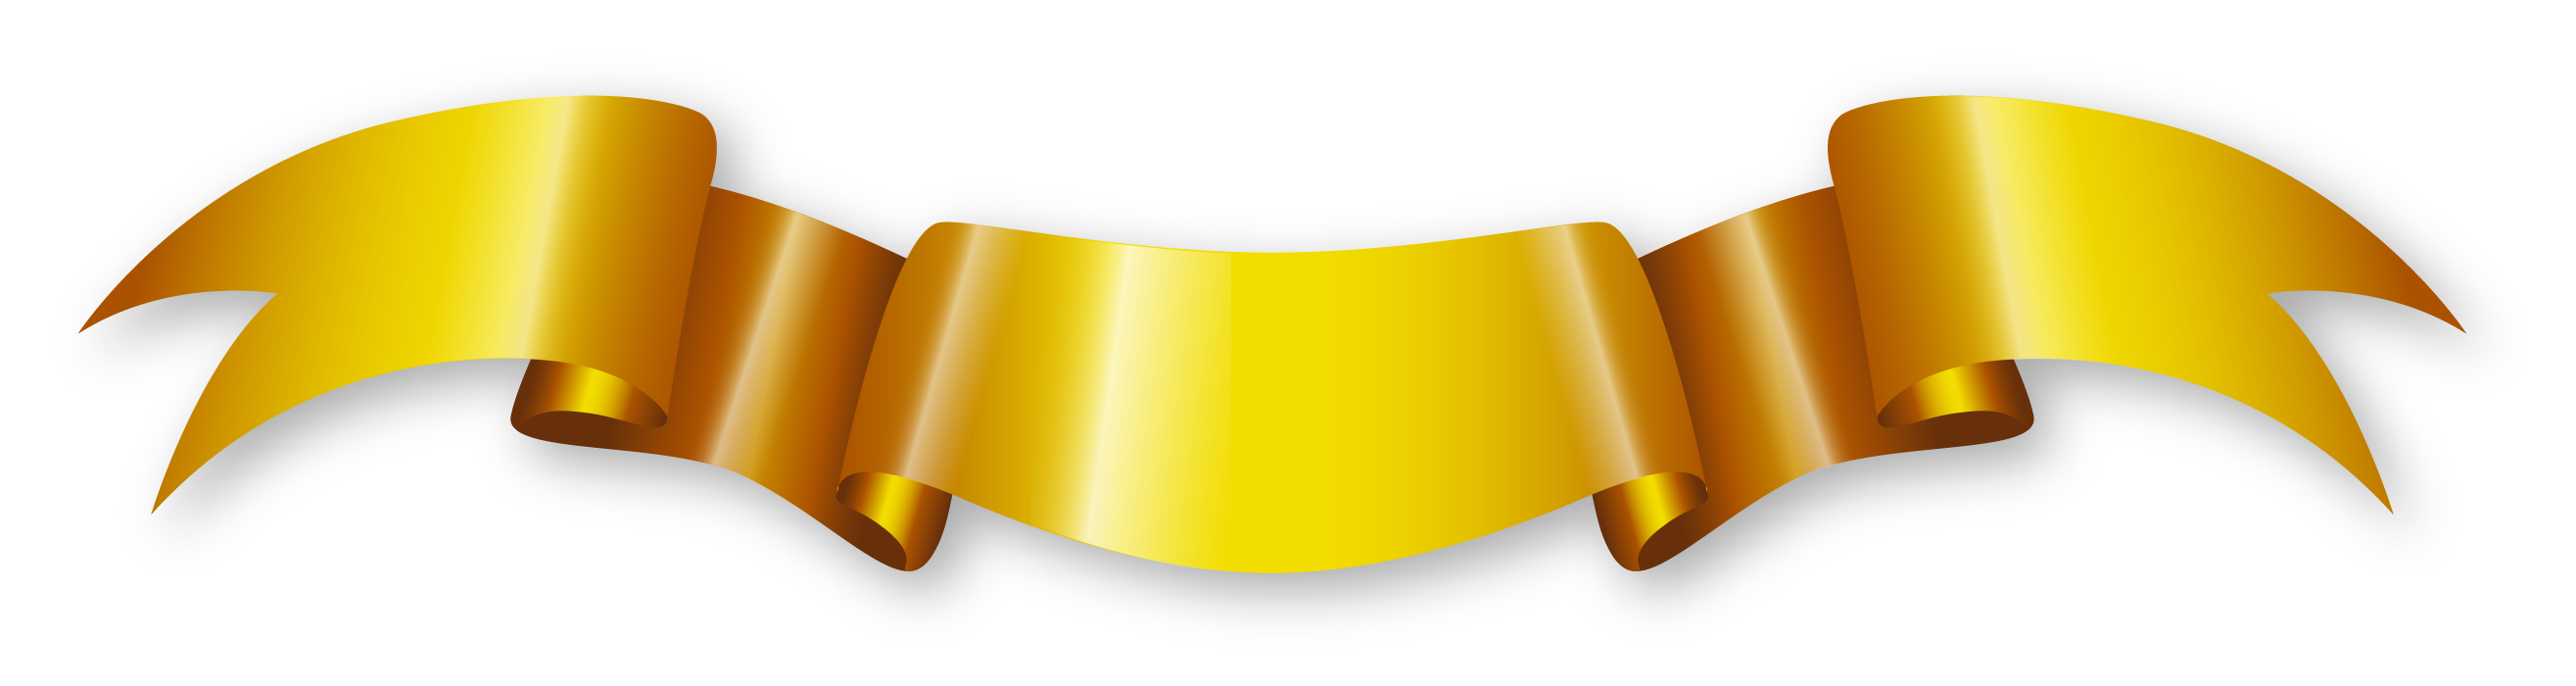 Gold Eagle Logo Png Hd, Transparent Png , Transparent Png Image - PNGitem